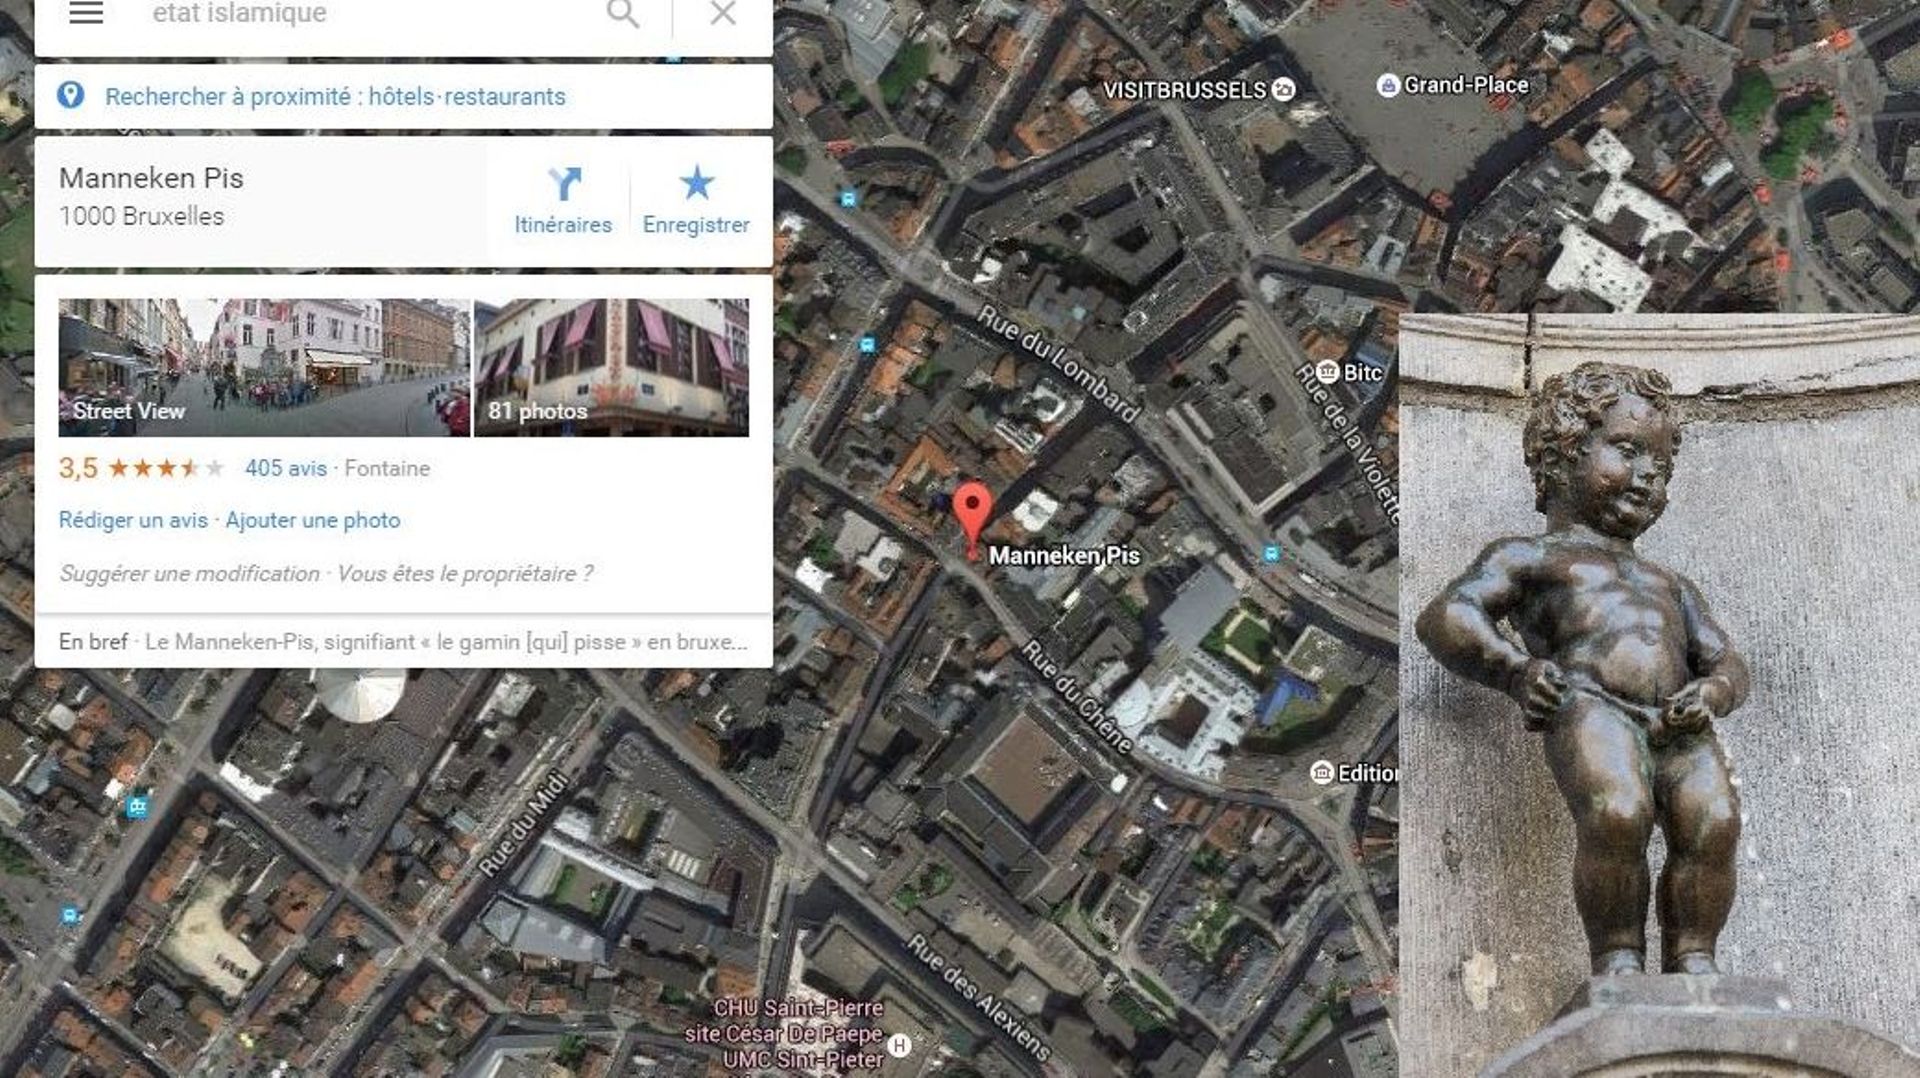 Manneken Pis lié à l'Etat islamique sur Google Maps